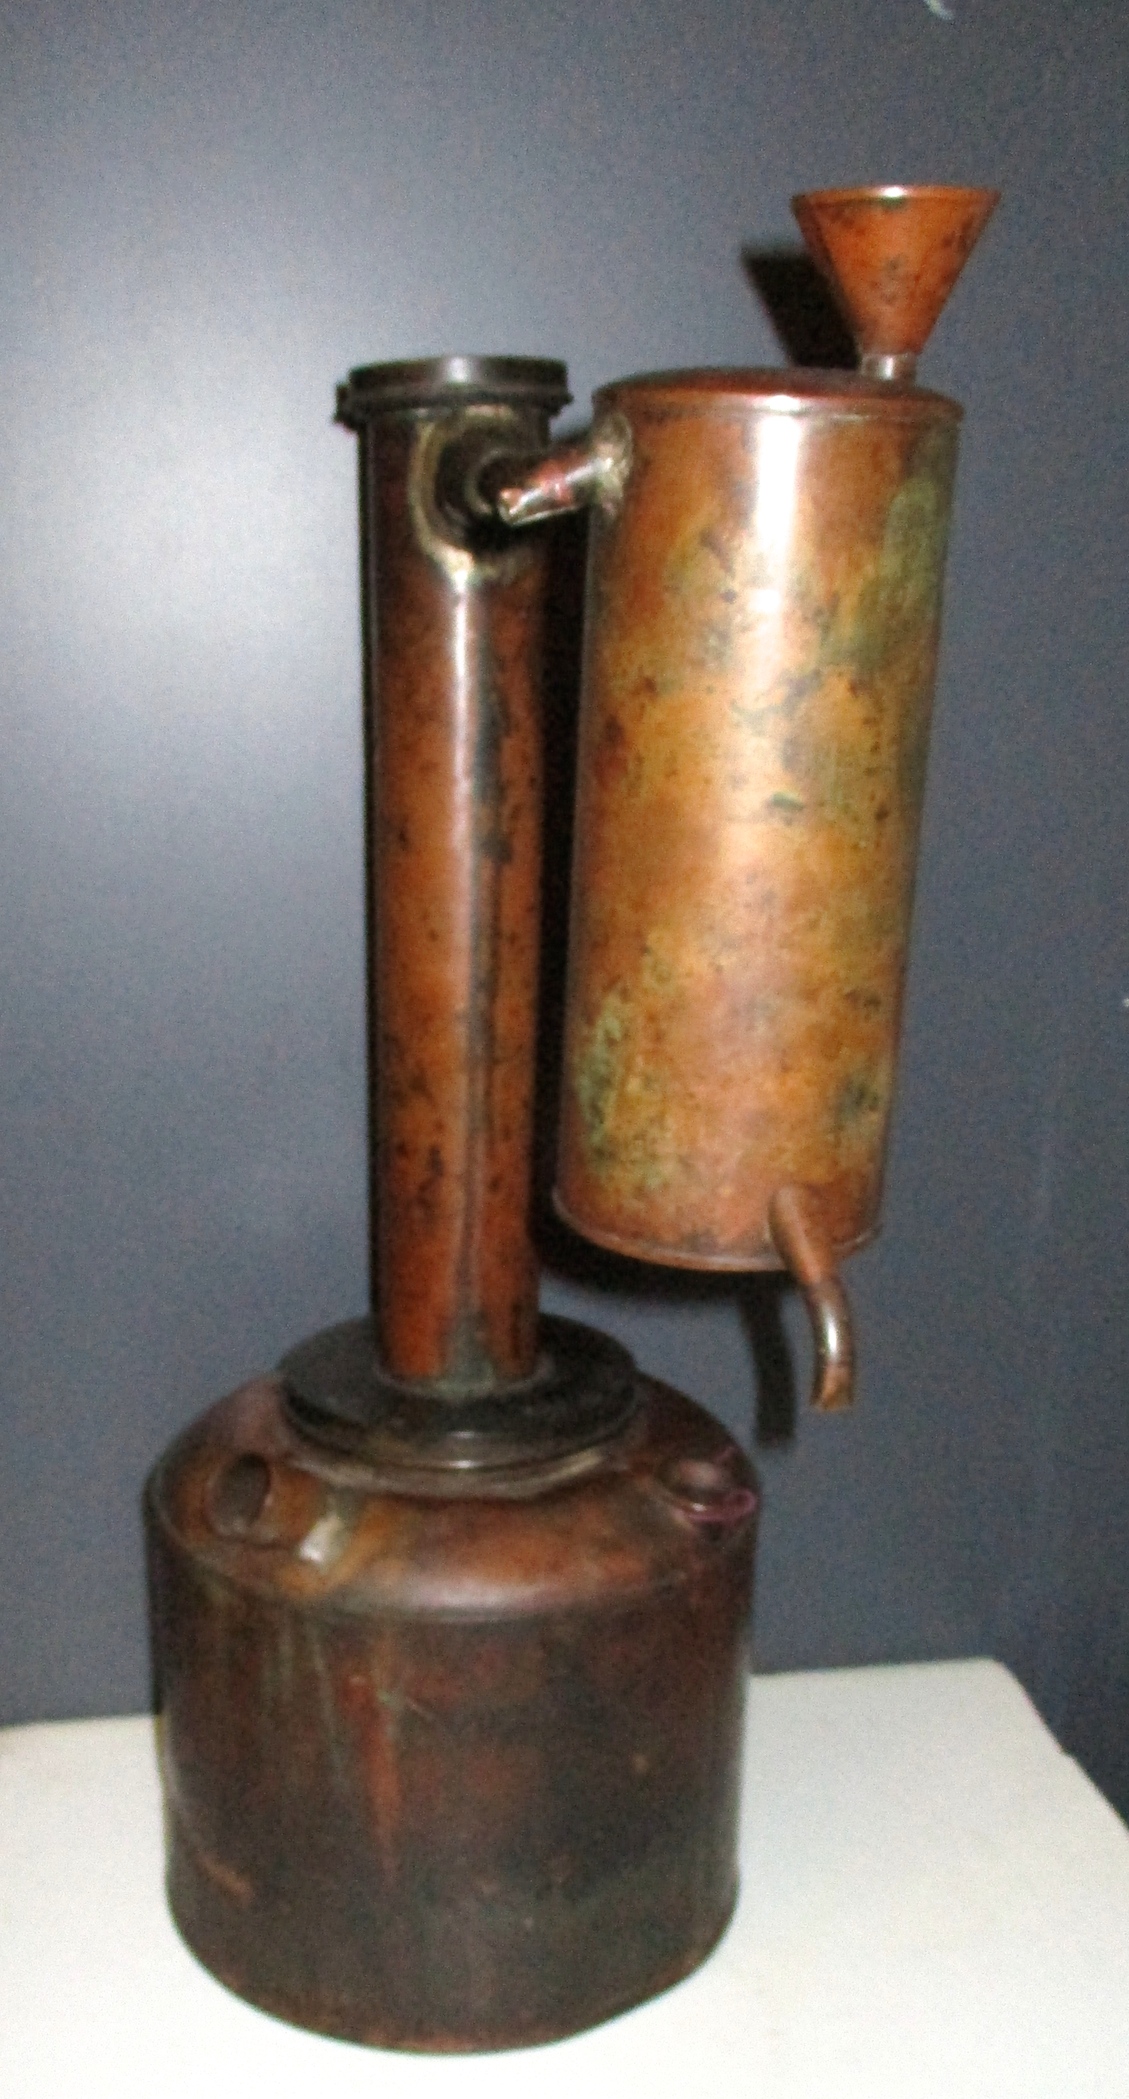 Antique Copper Alembic Still w/tag ( W. W. Heritage - E. F. Prentiss - PATD. March 16th 1875 - PHILLAD"A)